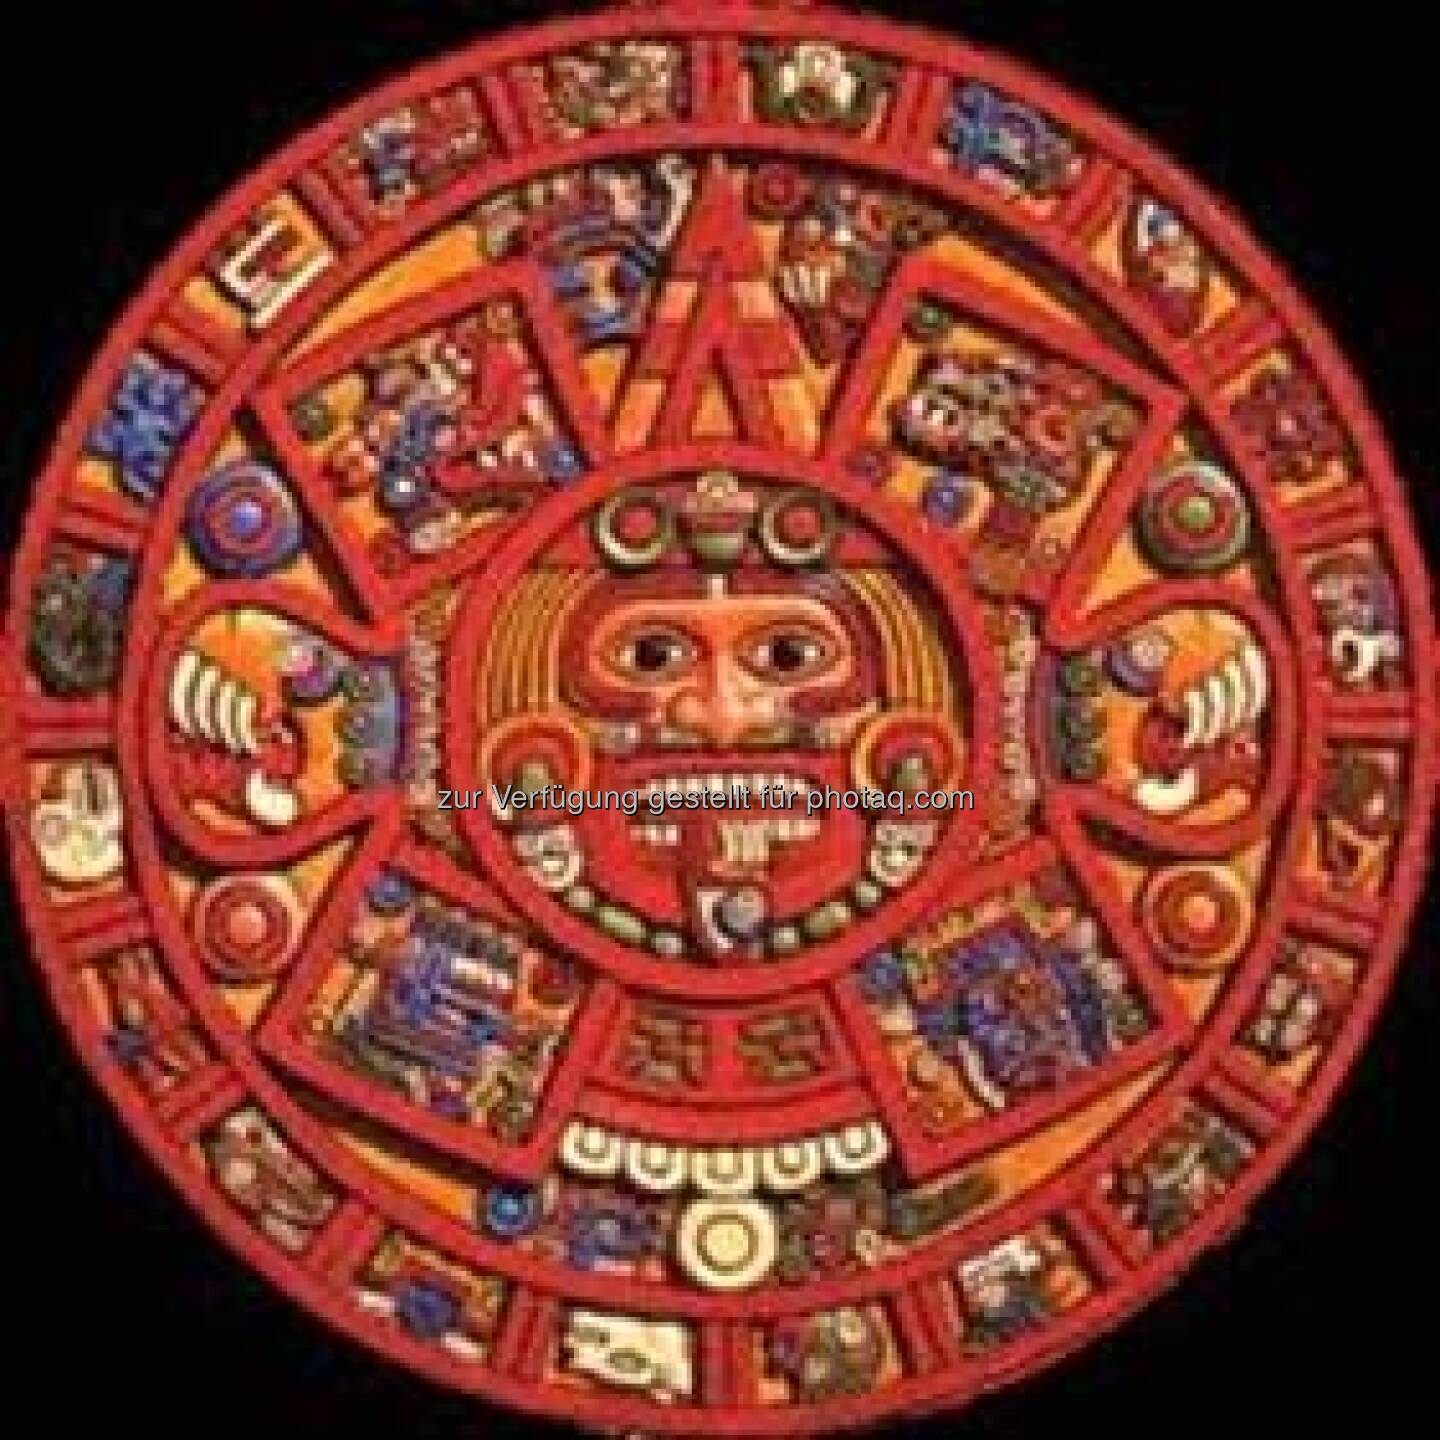 Martina Malyar, Bezirkschefin Alsergrund: Nachdem sich die Mayas oder zumindest jene, die den Kalender interpretiert hatten, geirrt haben, können wir wieder Vollgas geben! Ich freue mich, dass die Welt 21012 NICHT untergegangen ist! Malyar Kalender statt Maya Kalender!